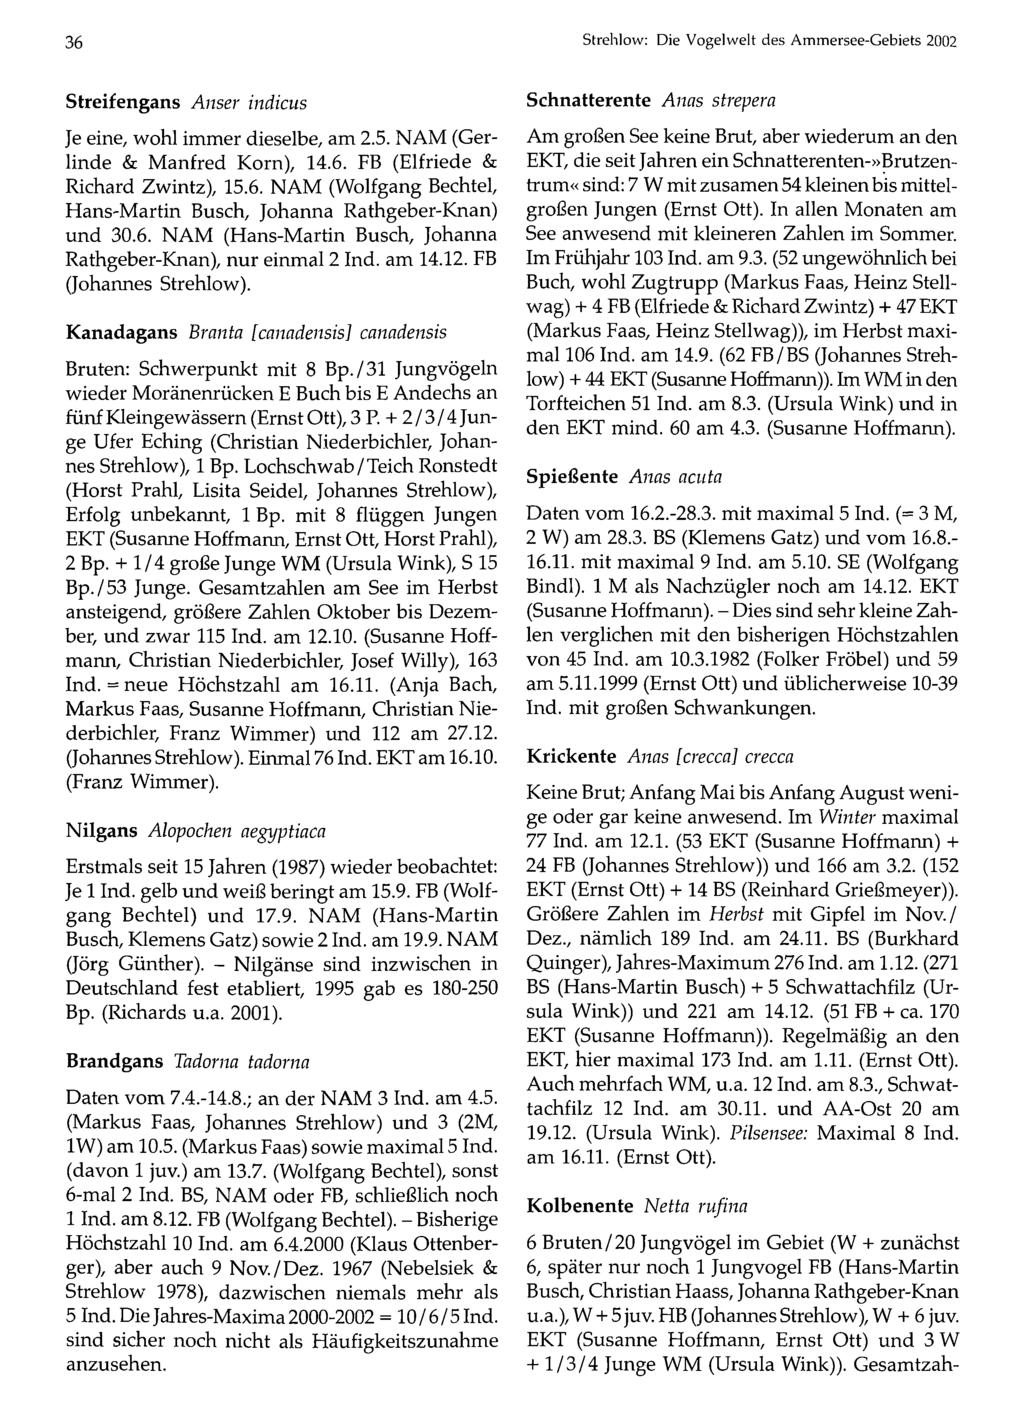 36 Ornithologische Gesellschaft Bayern, download unter Strehlow: www.biologiezentrum.at Die Vogelwelt des Ammersee-Gebiets 2002 Streifengans Anser indicus Je eine, wohl immer dieselbe, am 2.5.